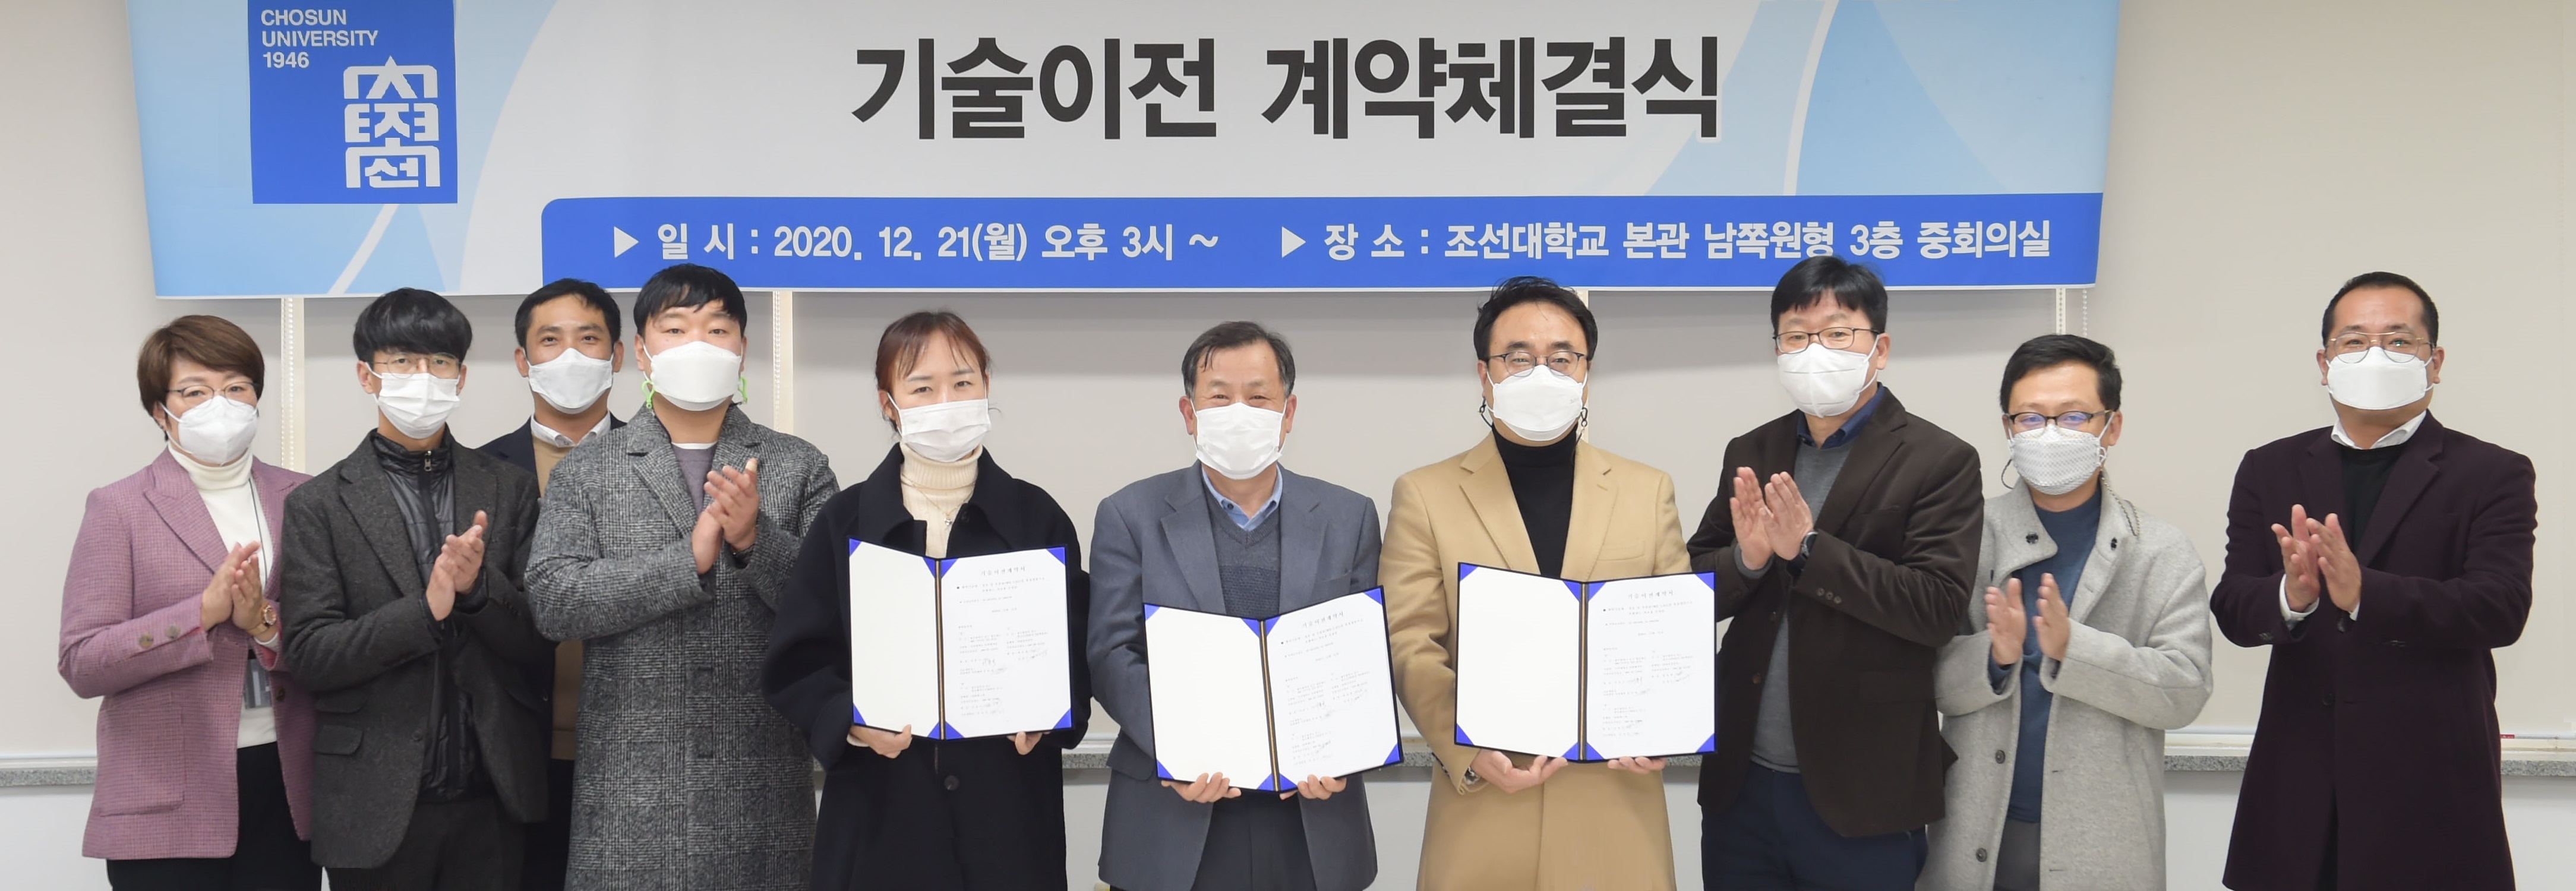 조선대학교 산학협력단, ‘관절염 개선 큰 효과’ 전호 잎 추출물 6억원 규모 기술이전 계약